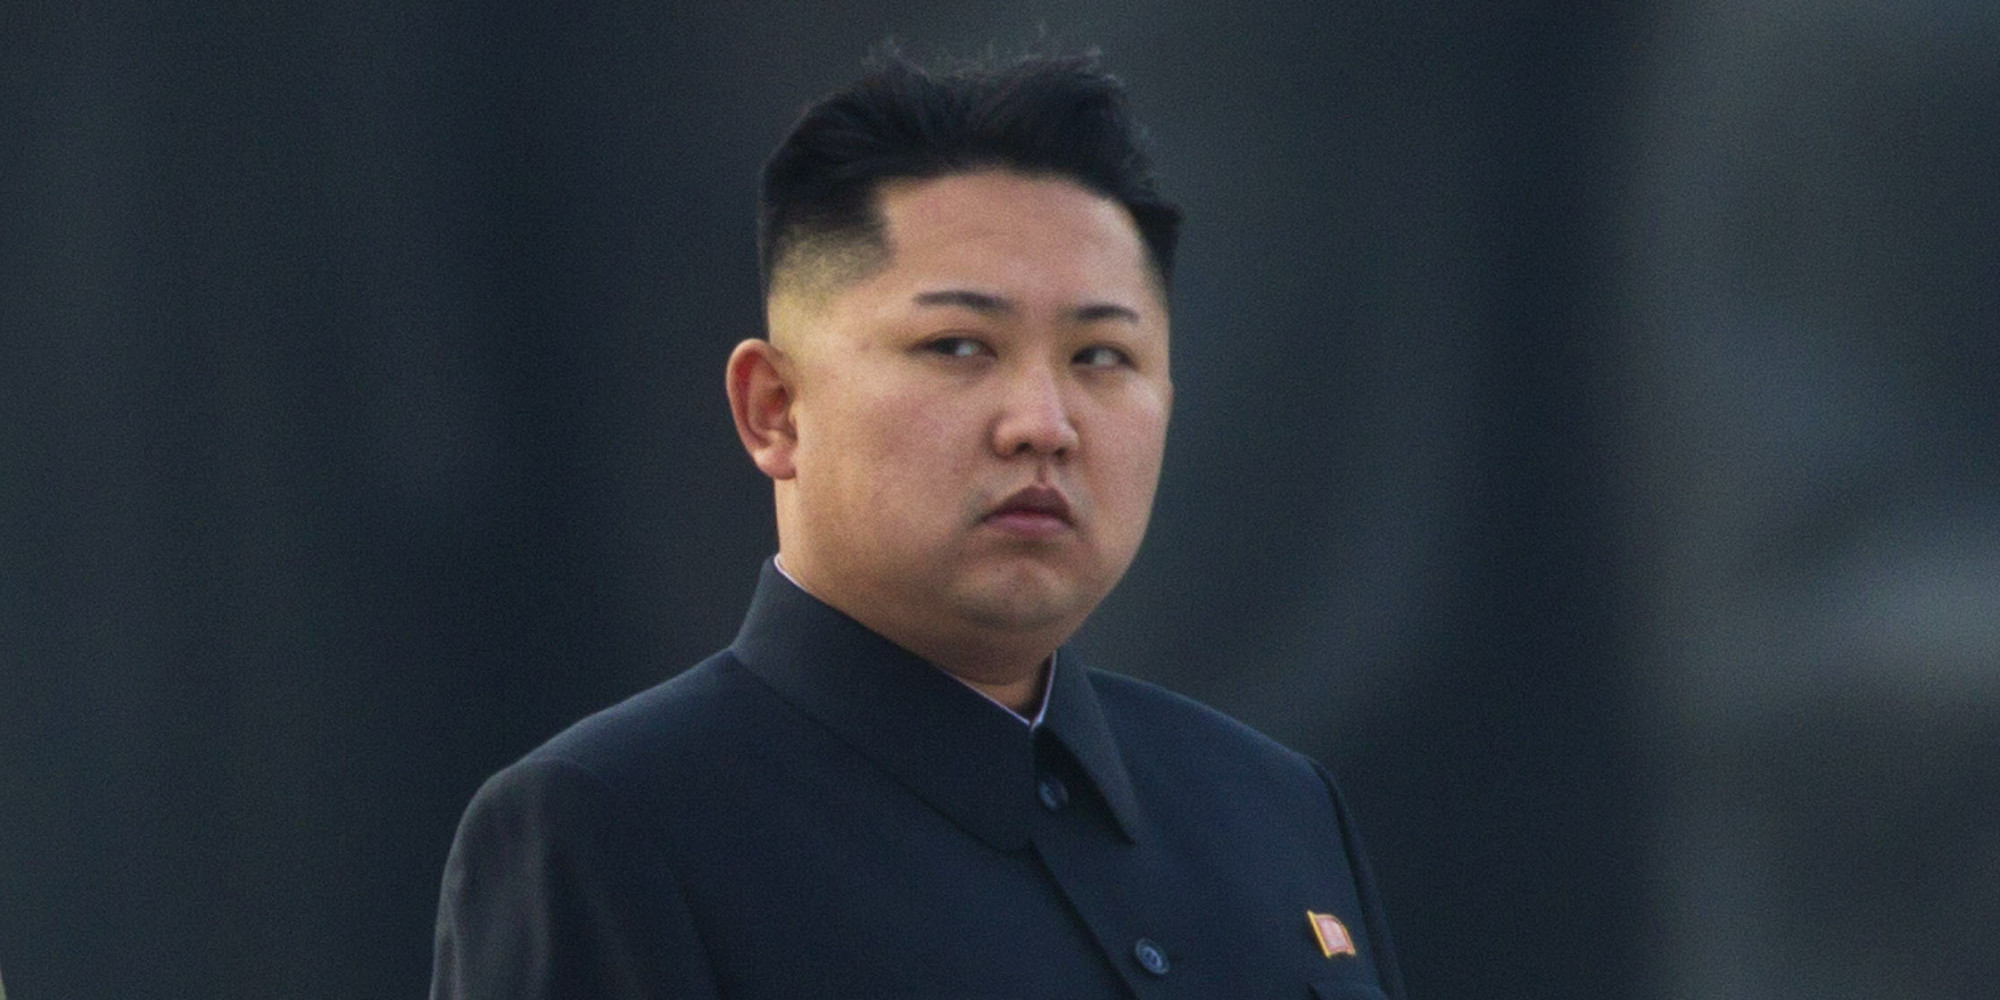 Νέα δοκιμή πυραύλου από τη Βόρεια Κορέα